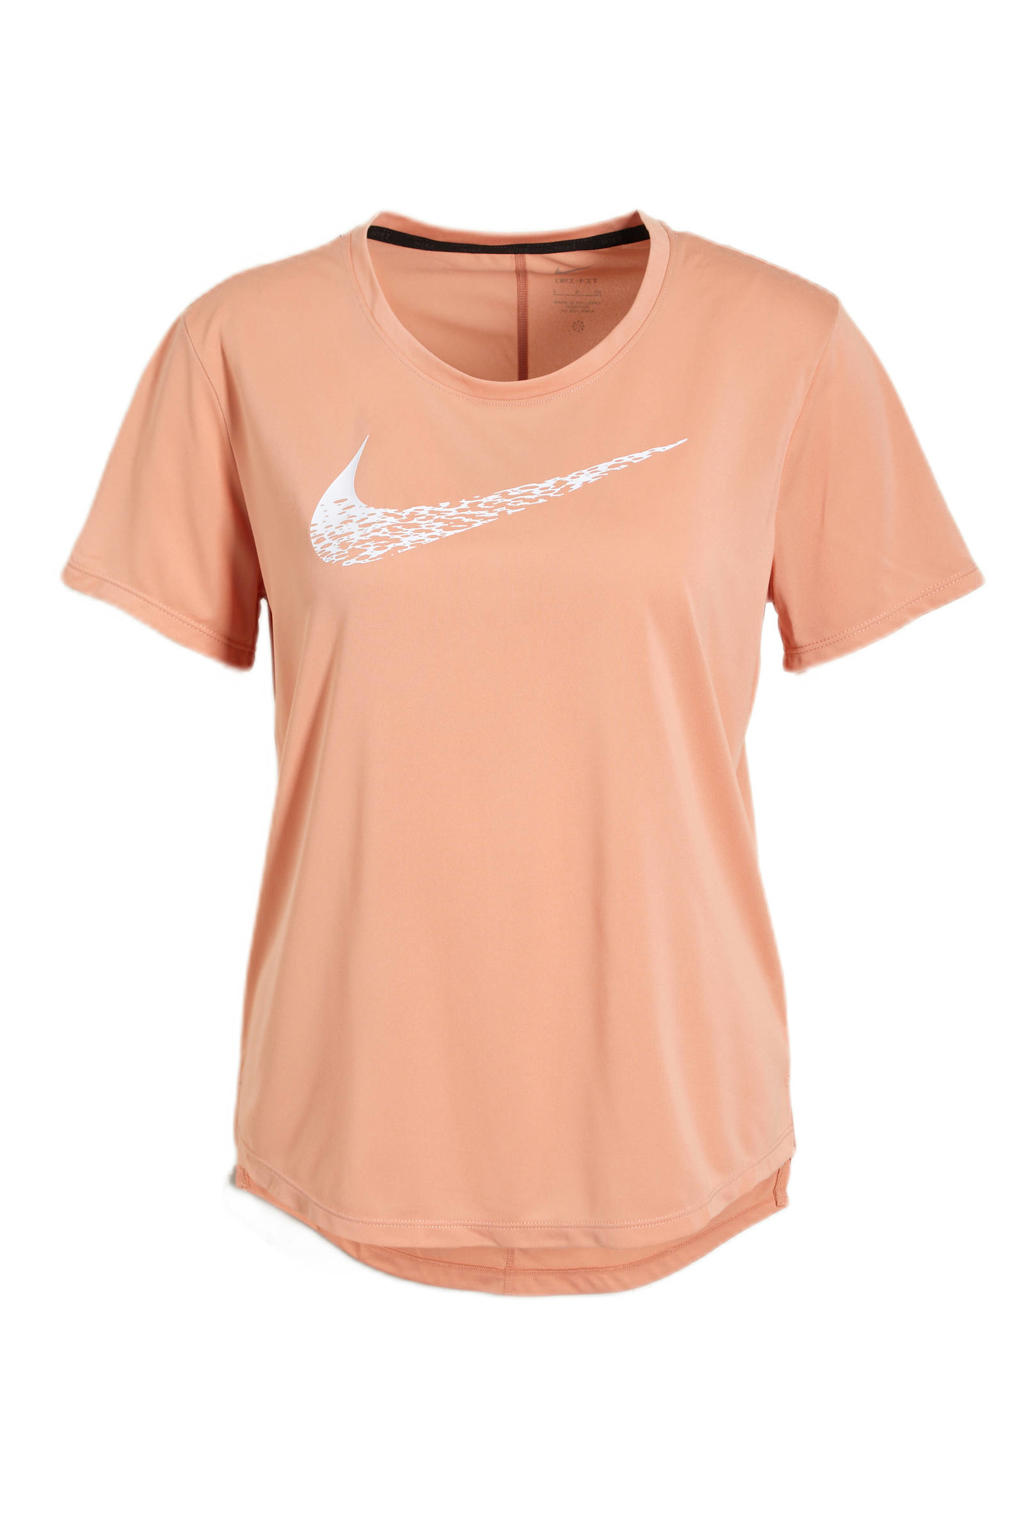 Nike hardloopshirt roze